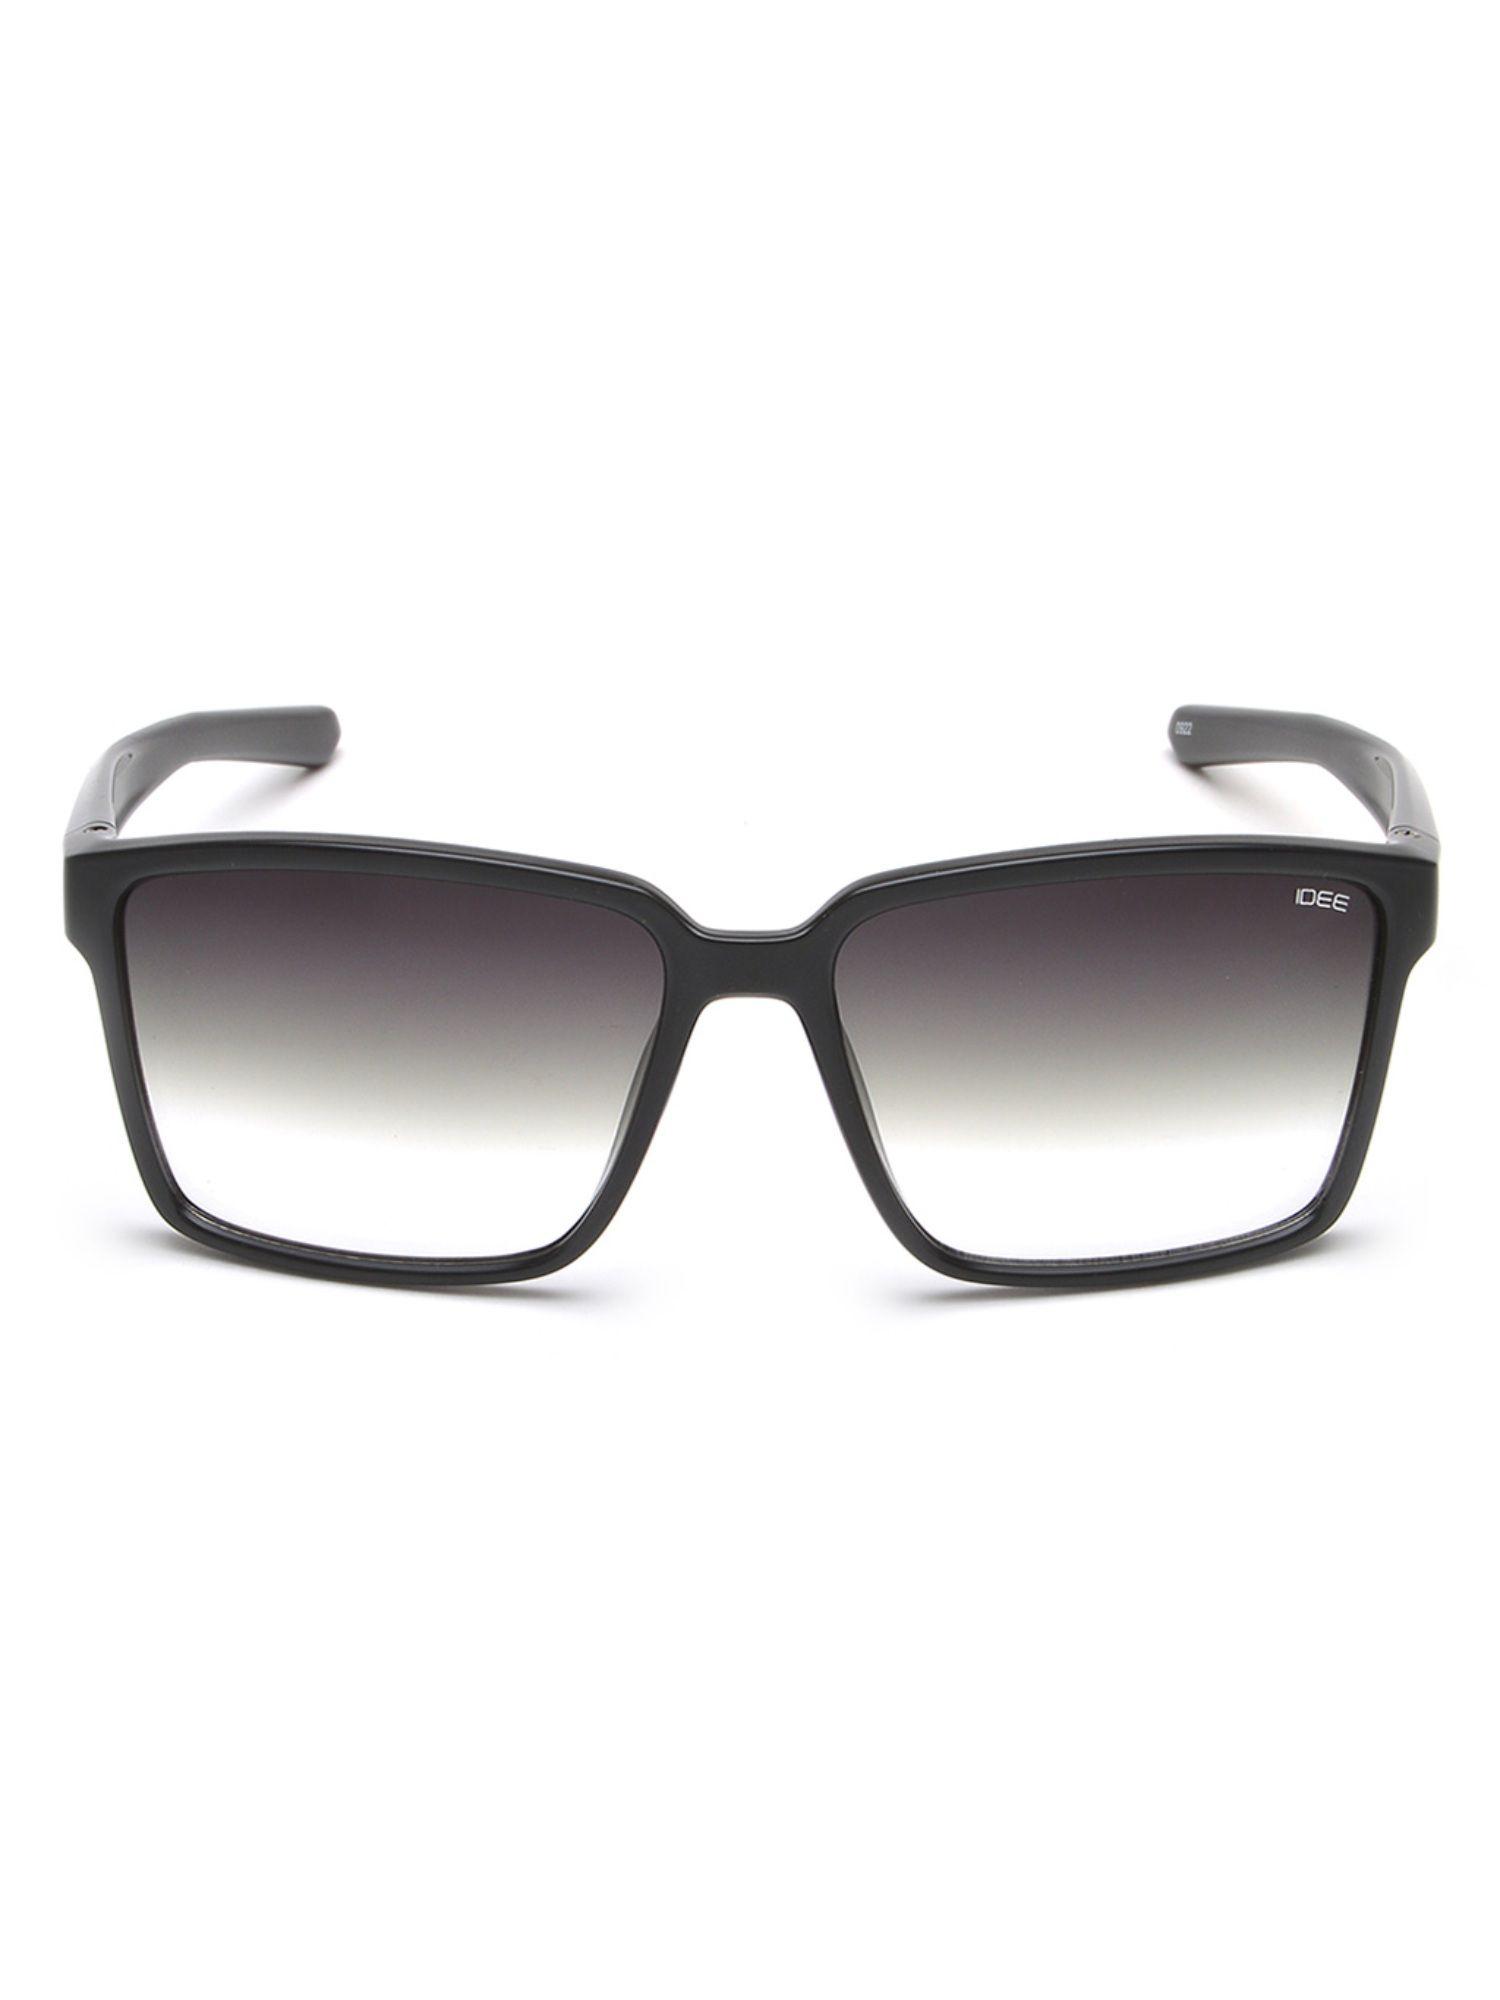 s2915 c1 60 green lens sunglasses for men (60)